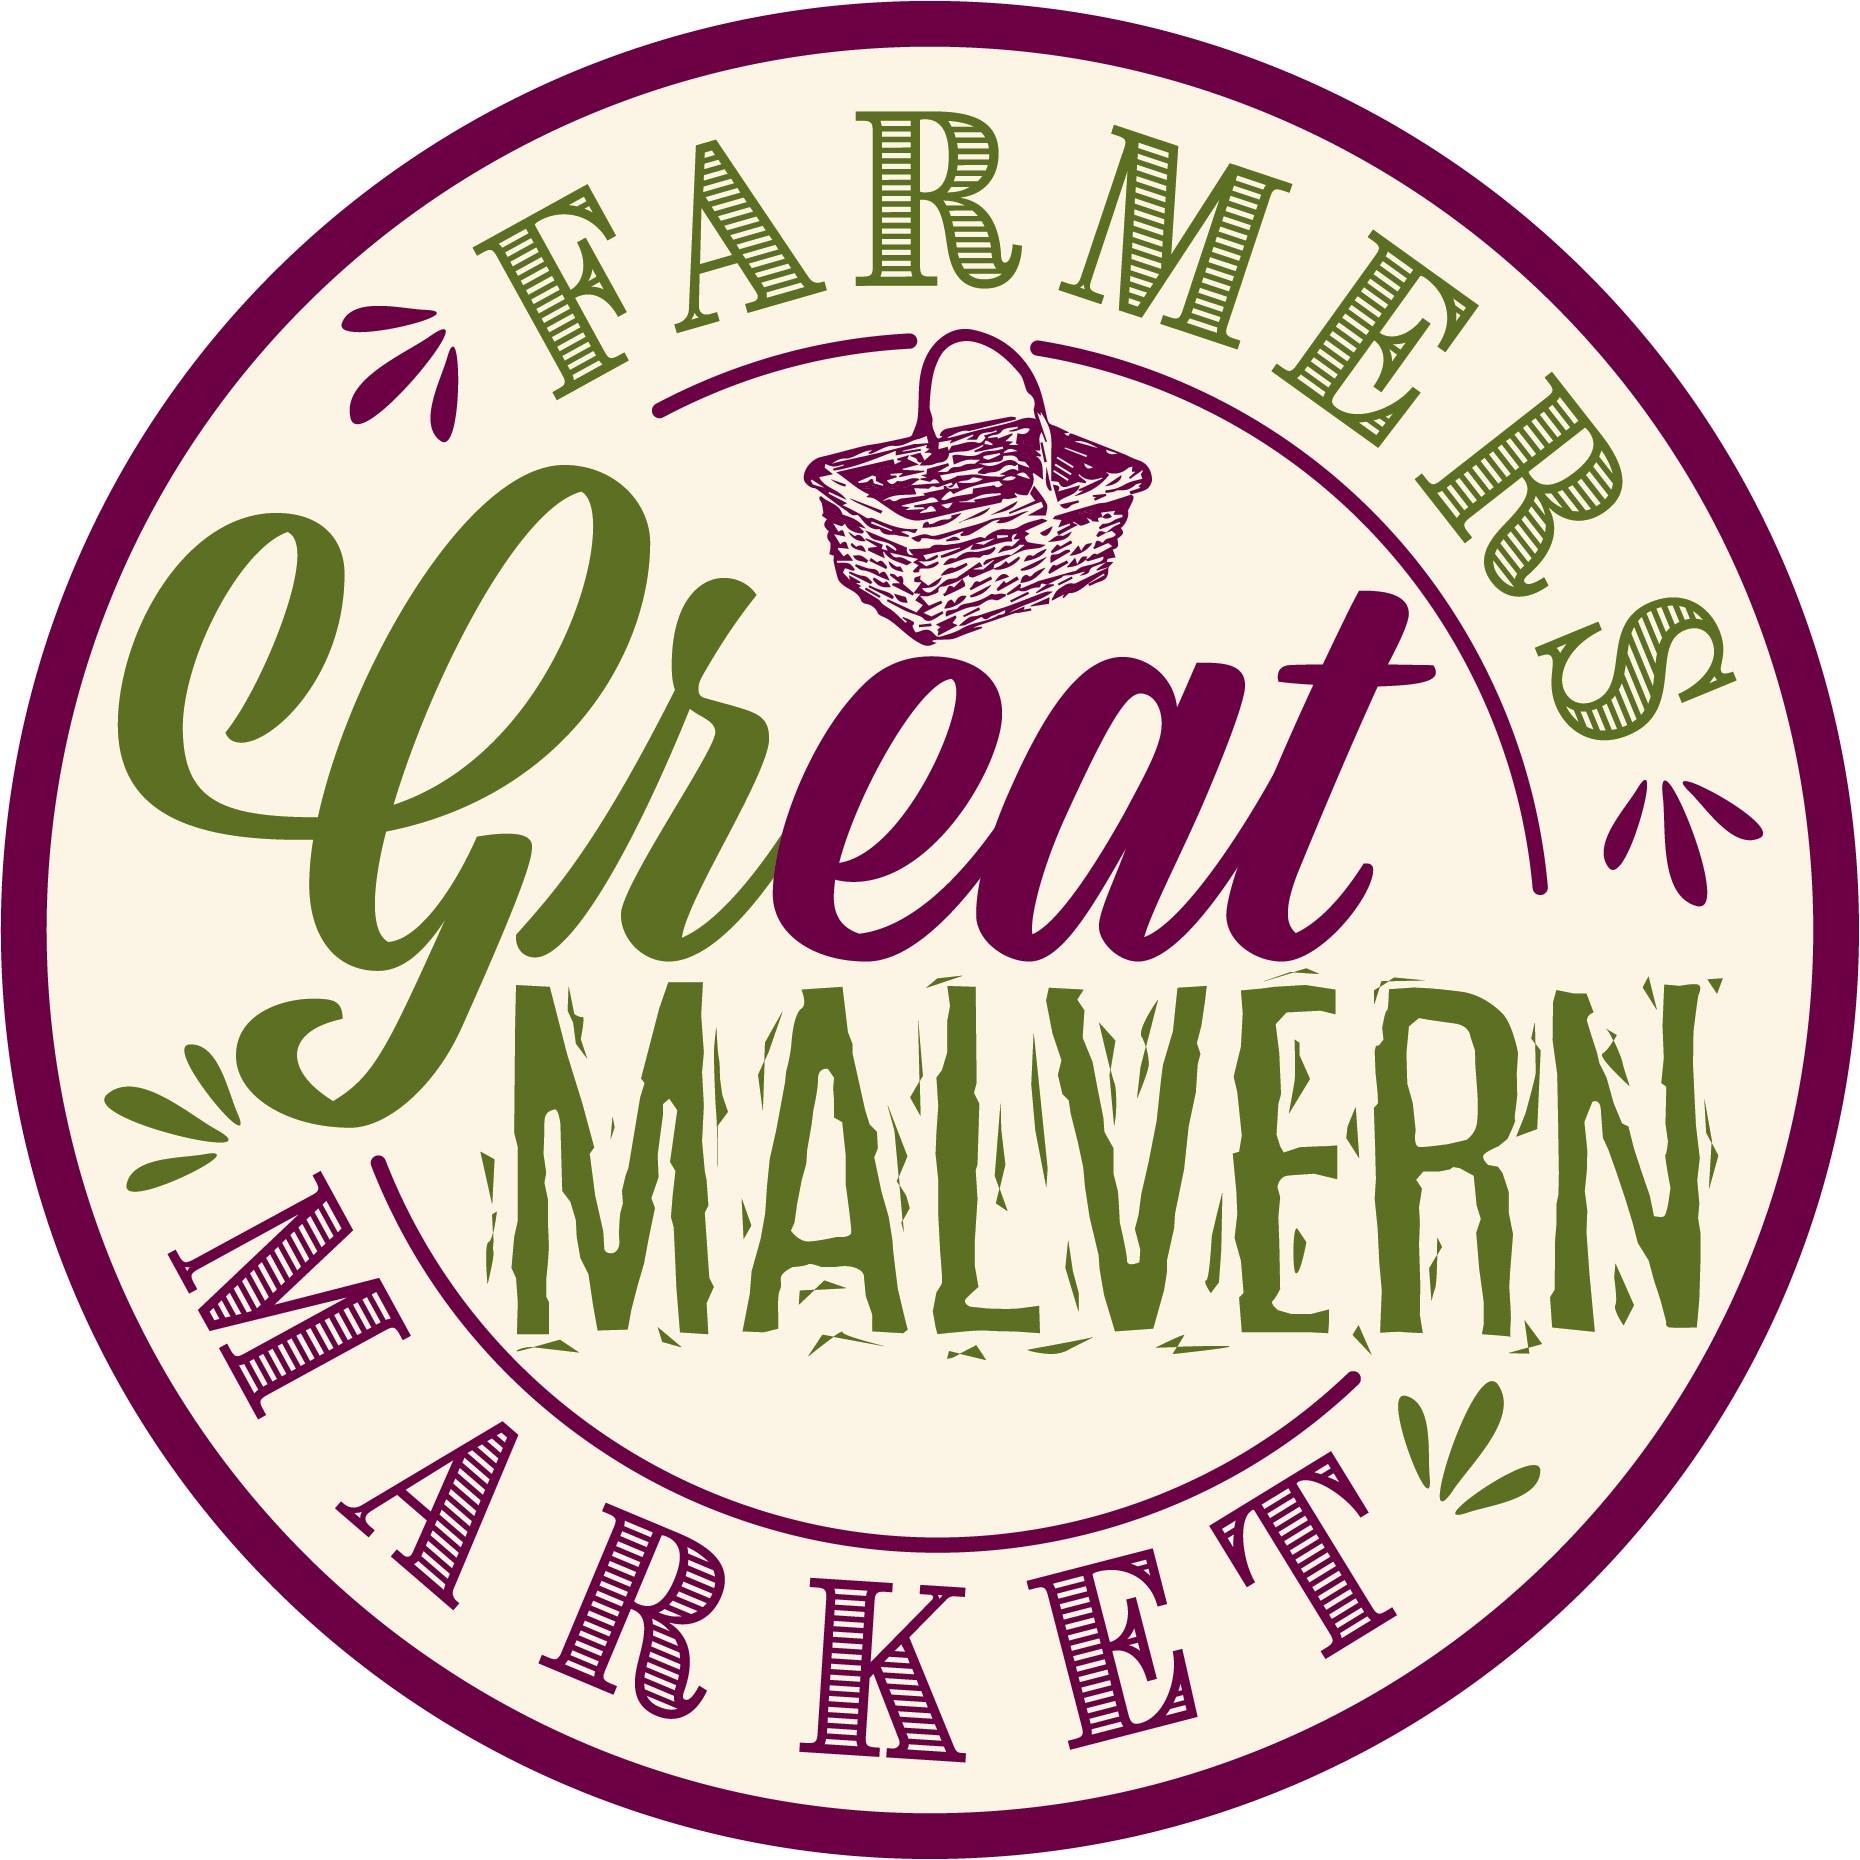 Great Malvern Farmers Market